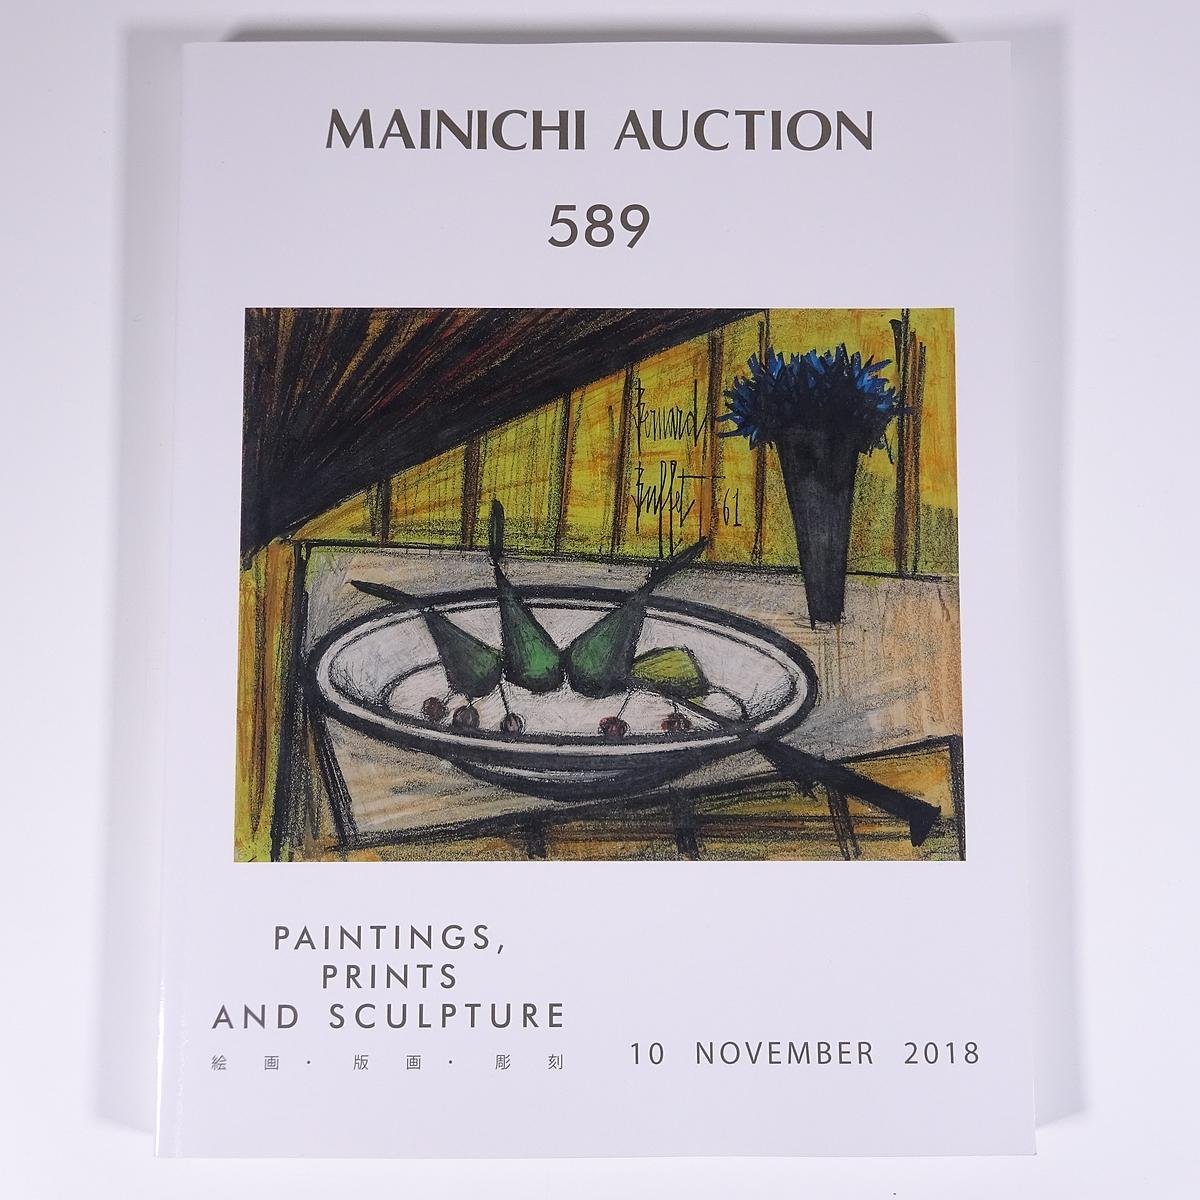 मेनिची नीलामी 589 पेंटिंग्स, प्रिंटों, मूर्तियां 2018/11/10 मैनिची नीलामी बड़ी किताबें नीलामी सूची सूची कला ललित कला, चित्रकारी, कला पुस्तक, संग्रह, सूची